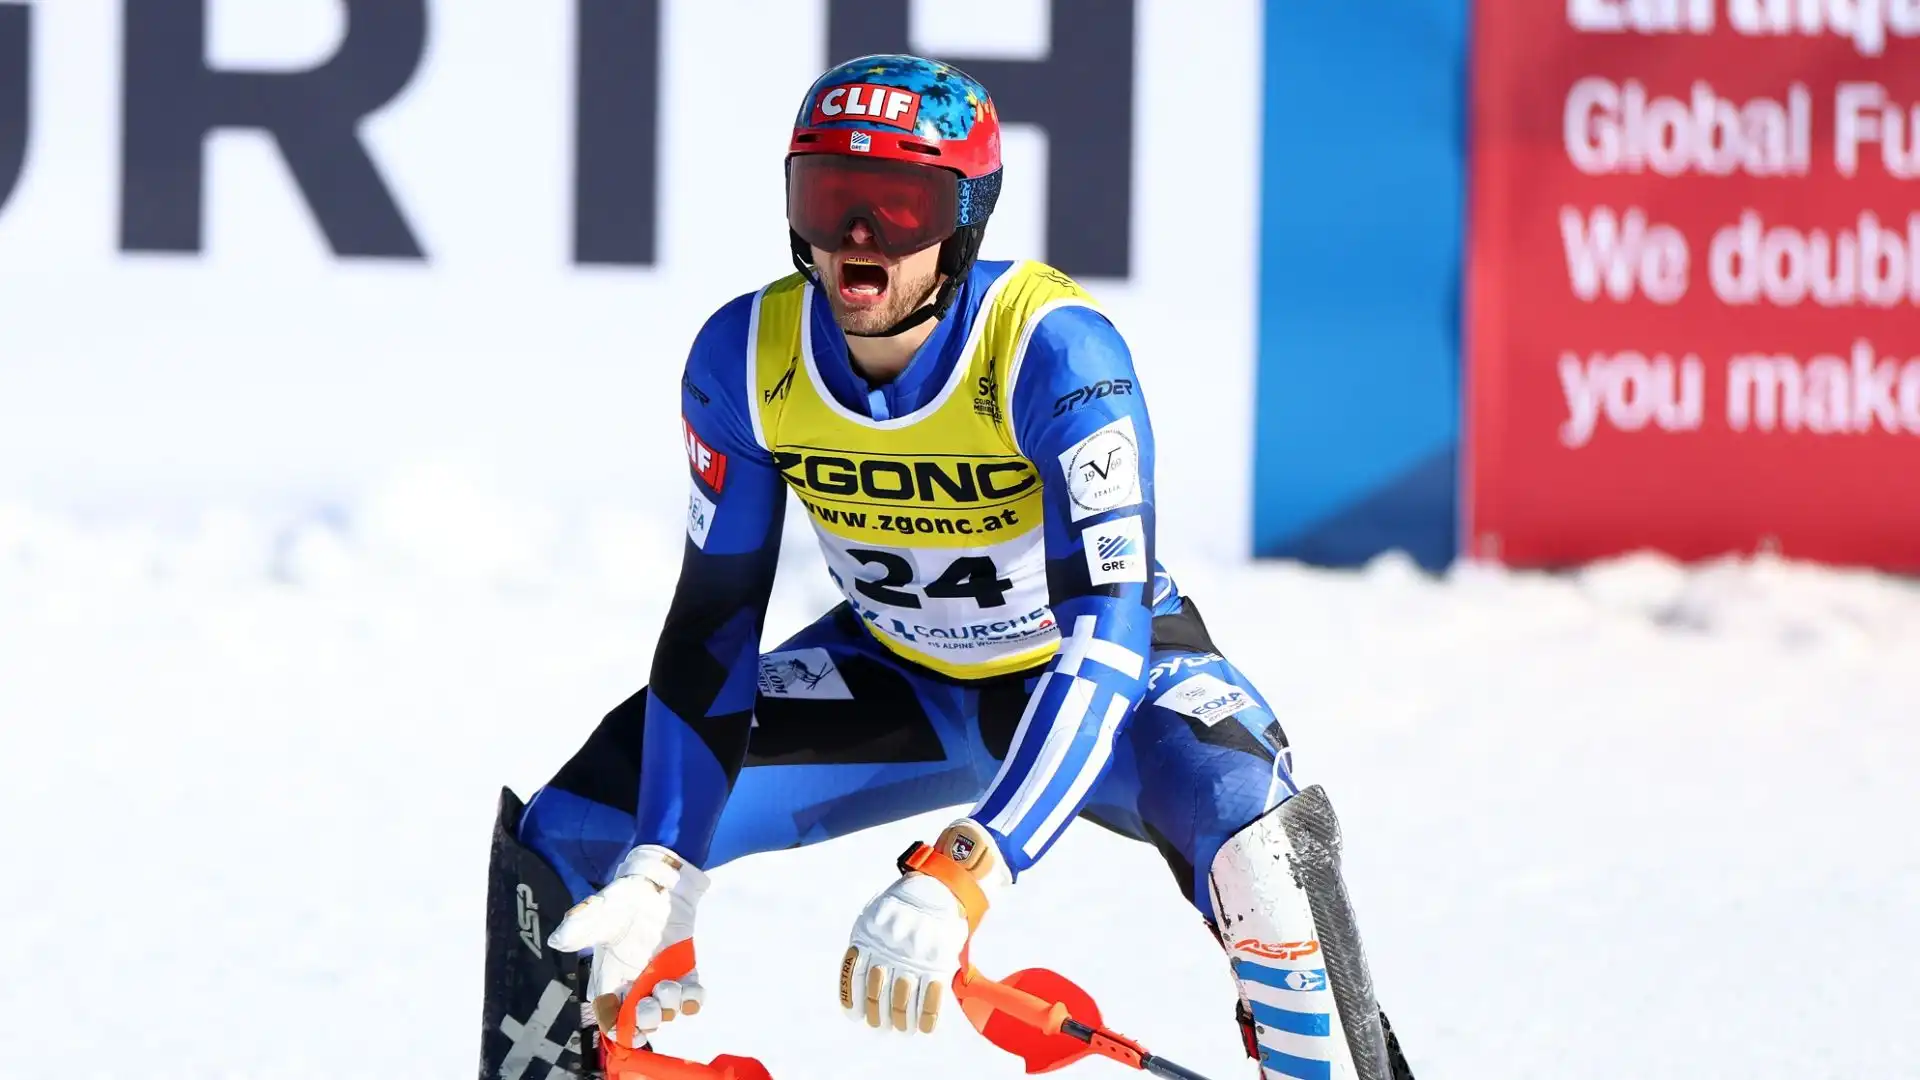 AJ Ginnis è arrivato clamorosamente secondo nello slalom di domenica